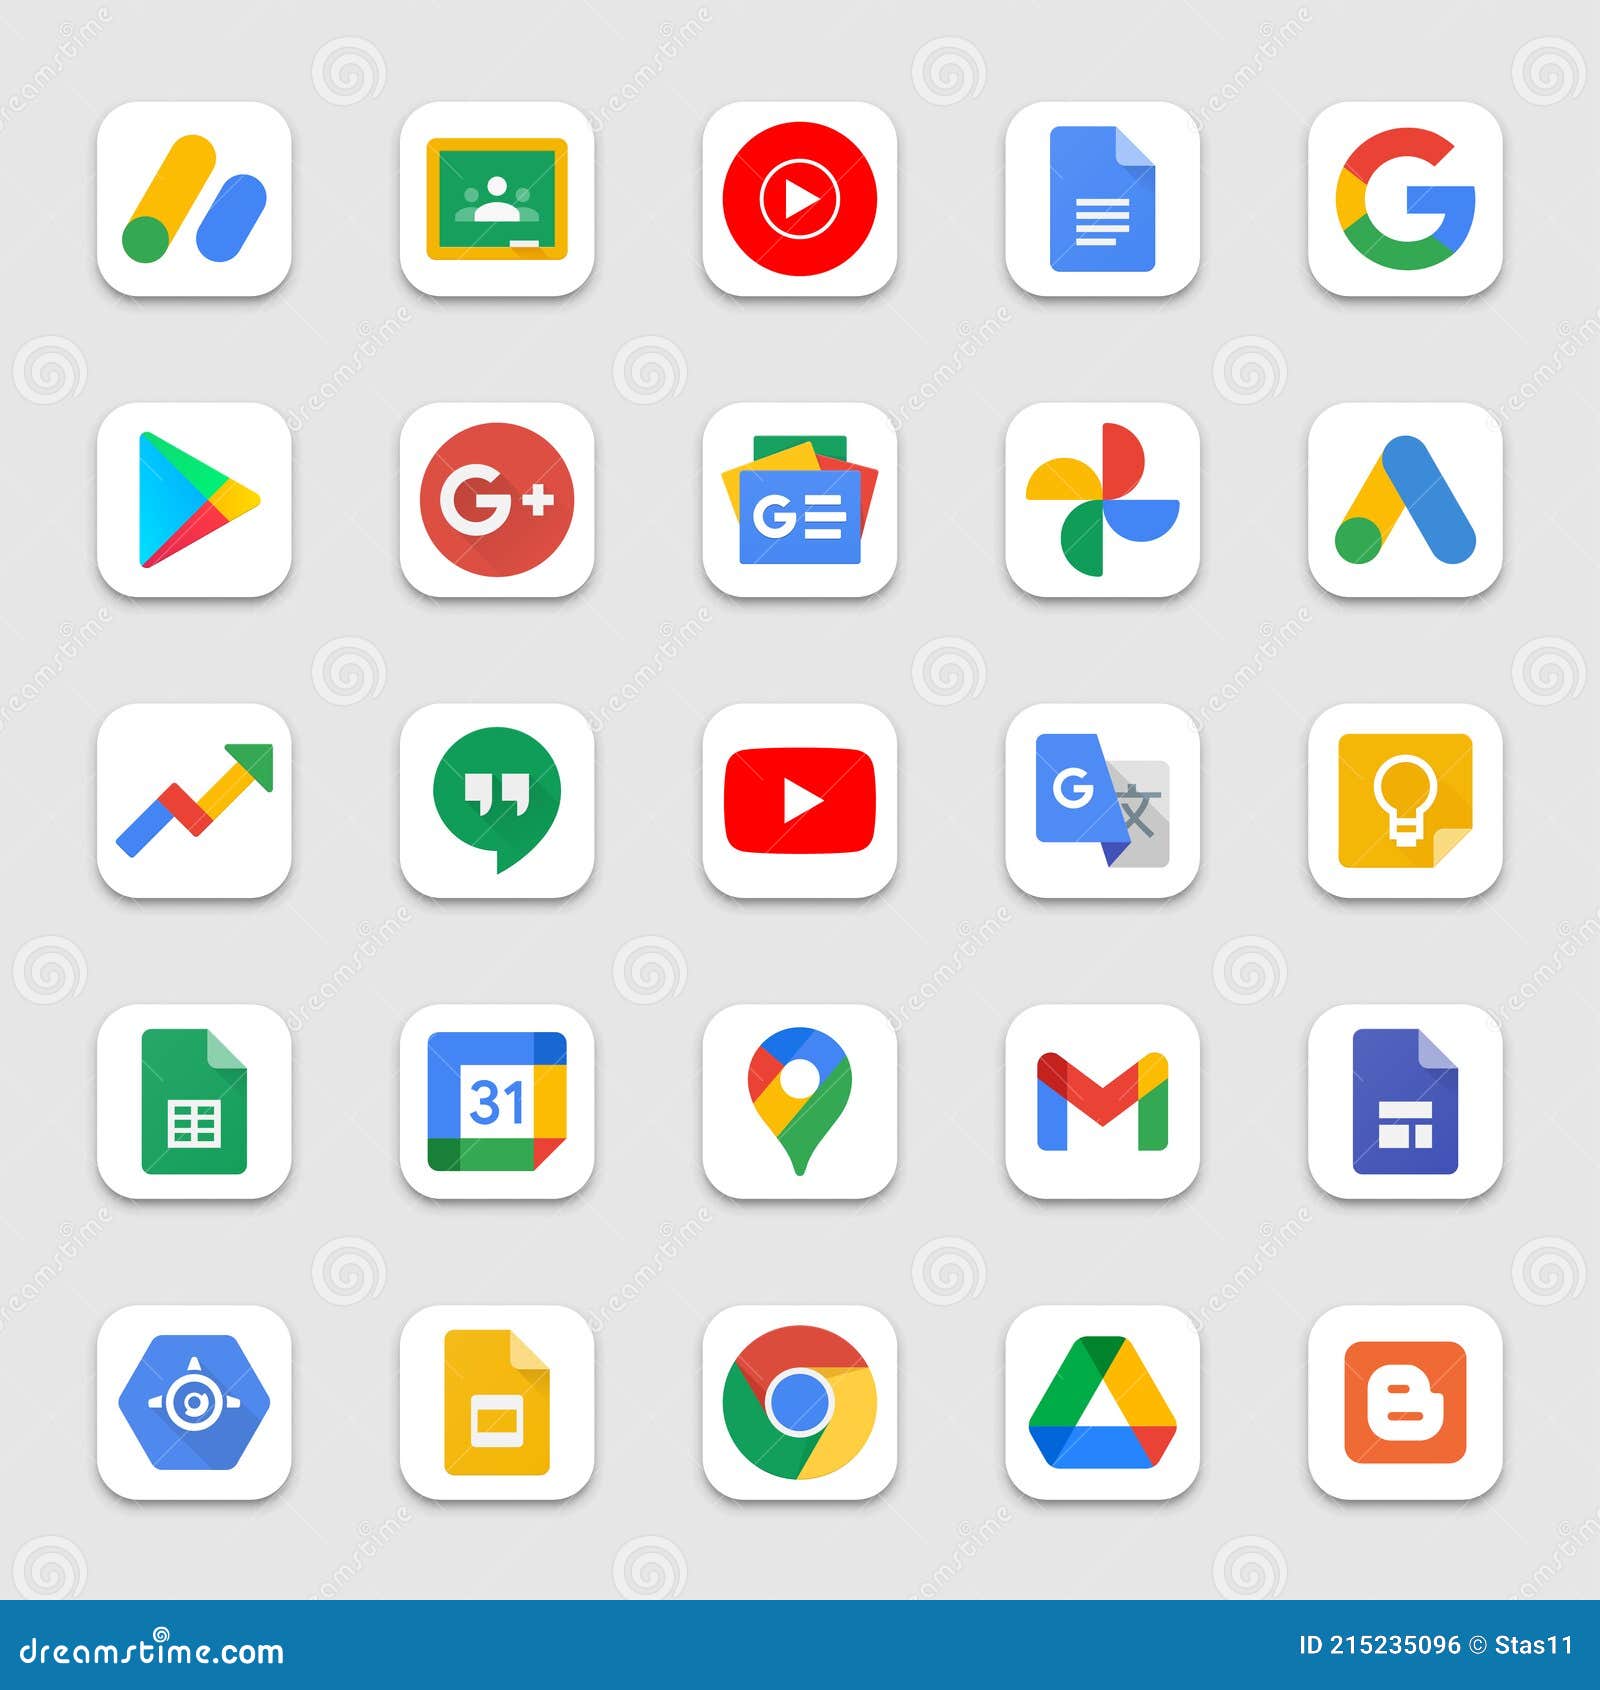 Google Products và Programs Logo là những biểu tượng thú vị sử dụng trên trang web của Google. Hãy xem hình ảnh liên quan để khám phá về chúng và còn những bộ sưu tập logo được tổng hợp trên nền trắng tinh khiết.